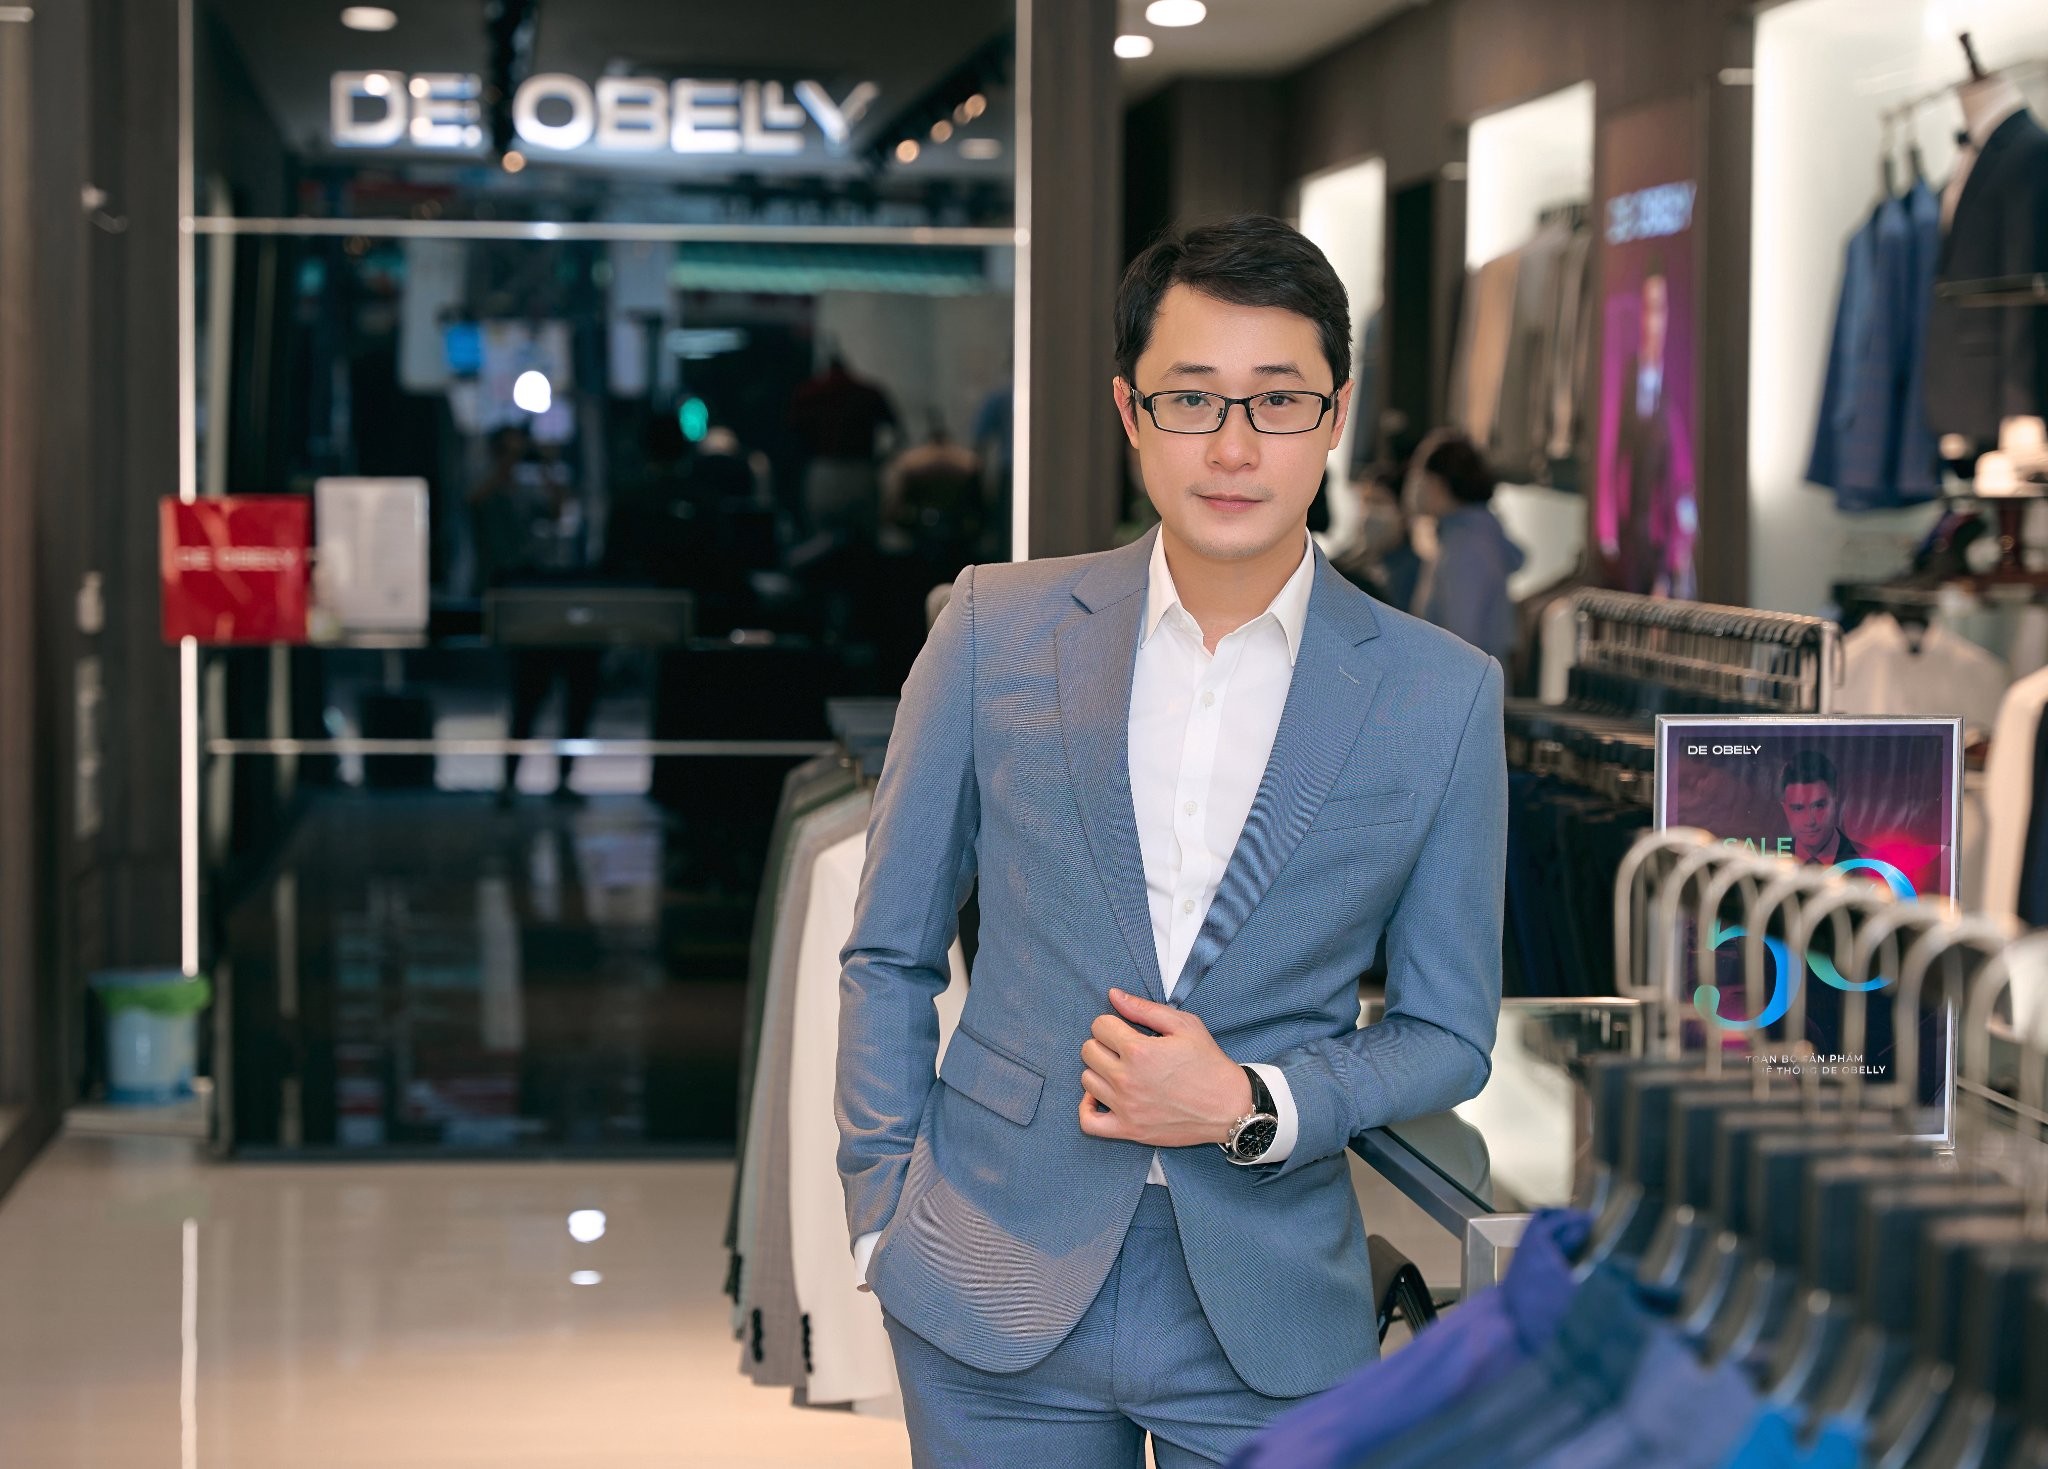 

Sau đó 1 năm, thương hiệu DE OBELLY đã chính thức ra đời, anh góp vốn với chị Hà và trở thành CEO
